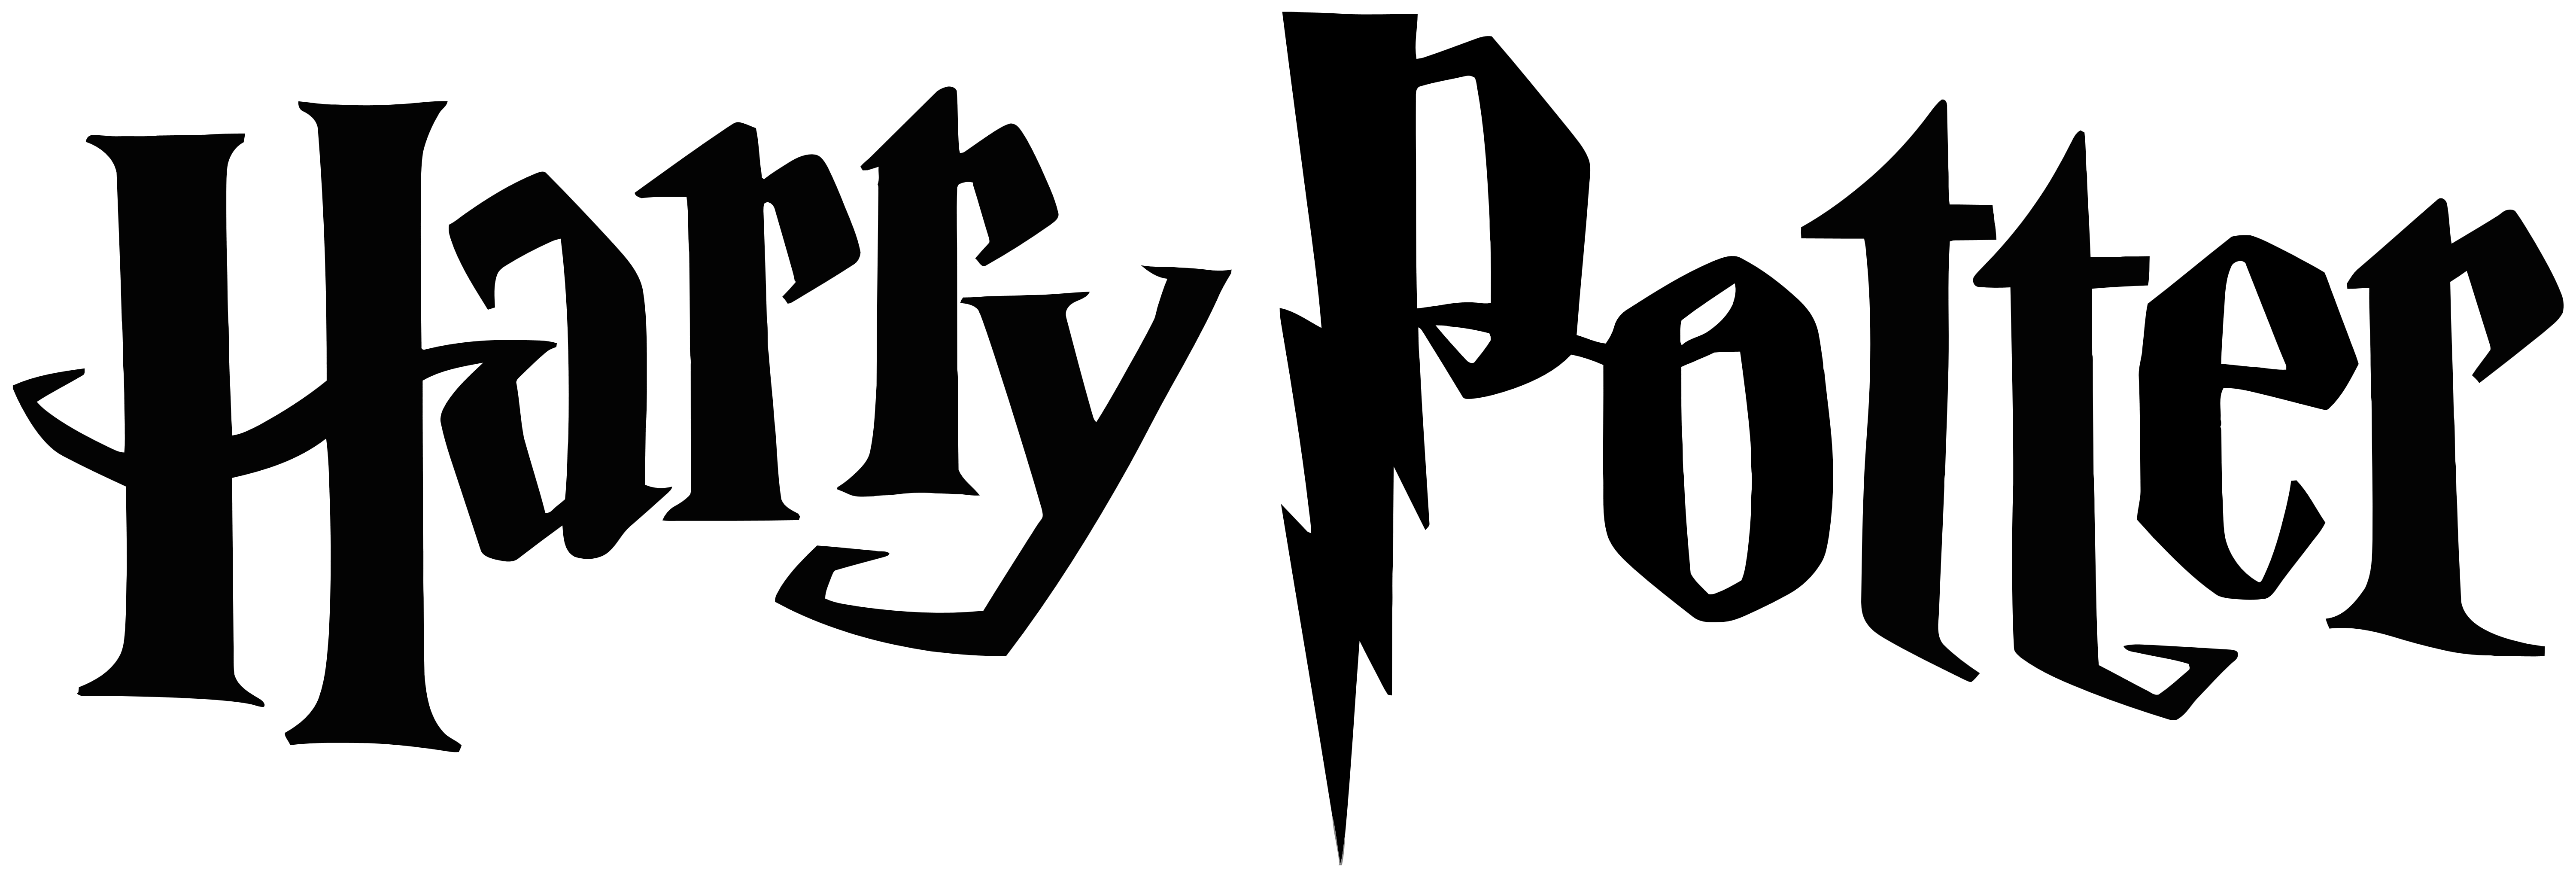 Potter Logo - Harry Potter